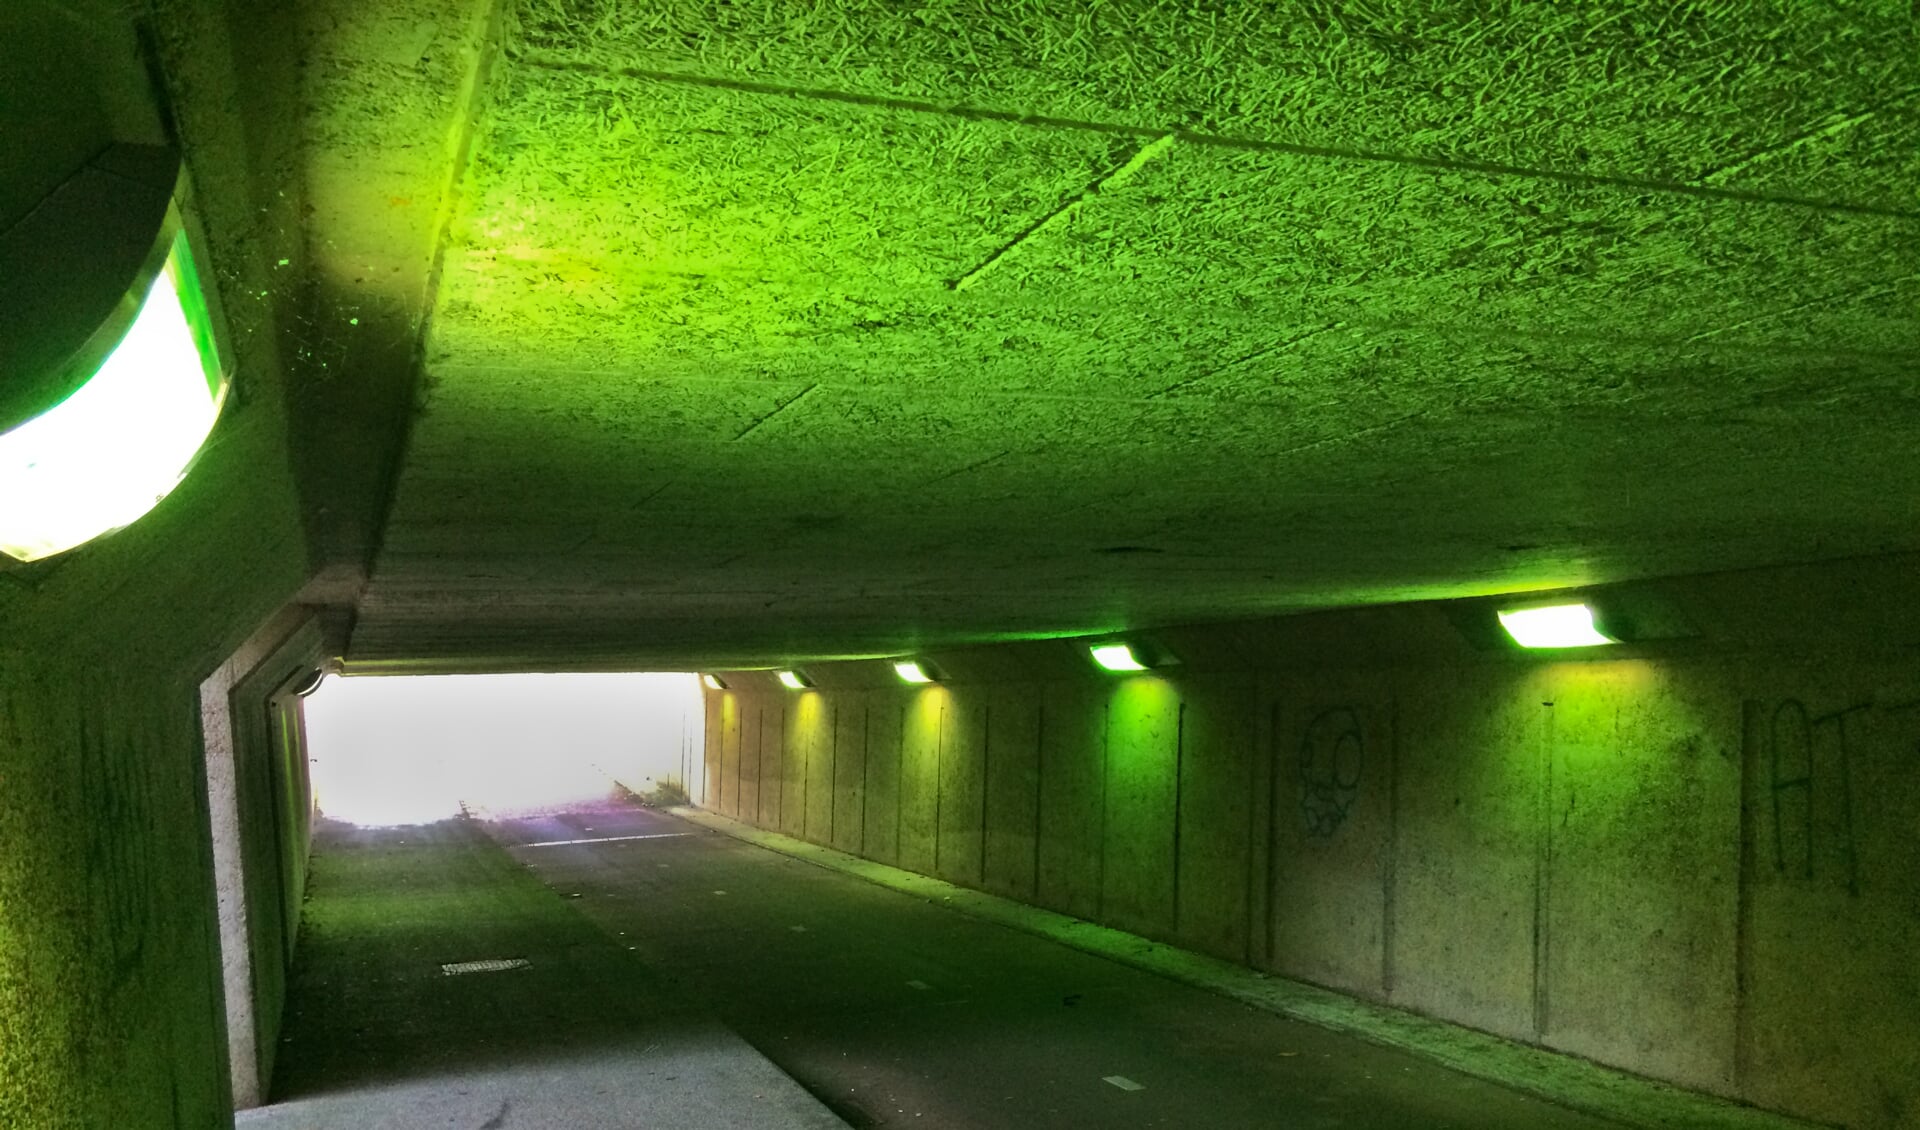 De tunnel is ineens groen door de grafitti. 